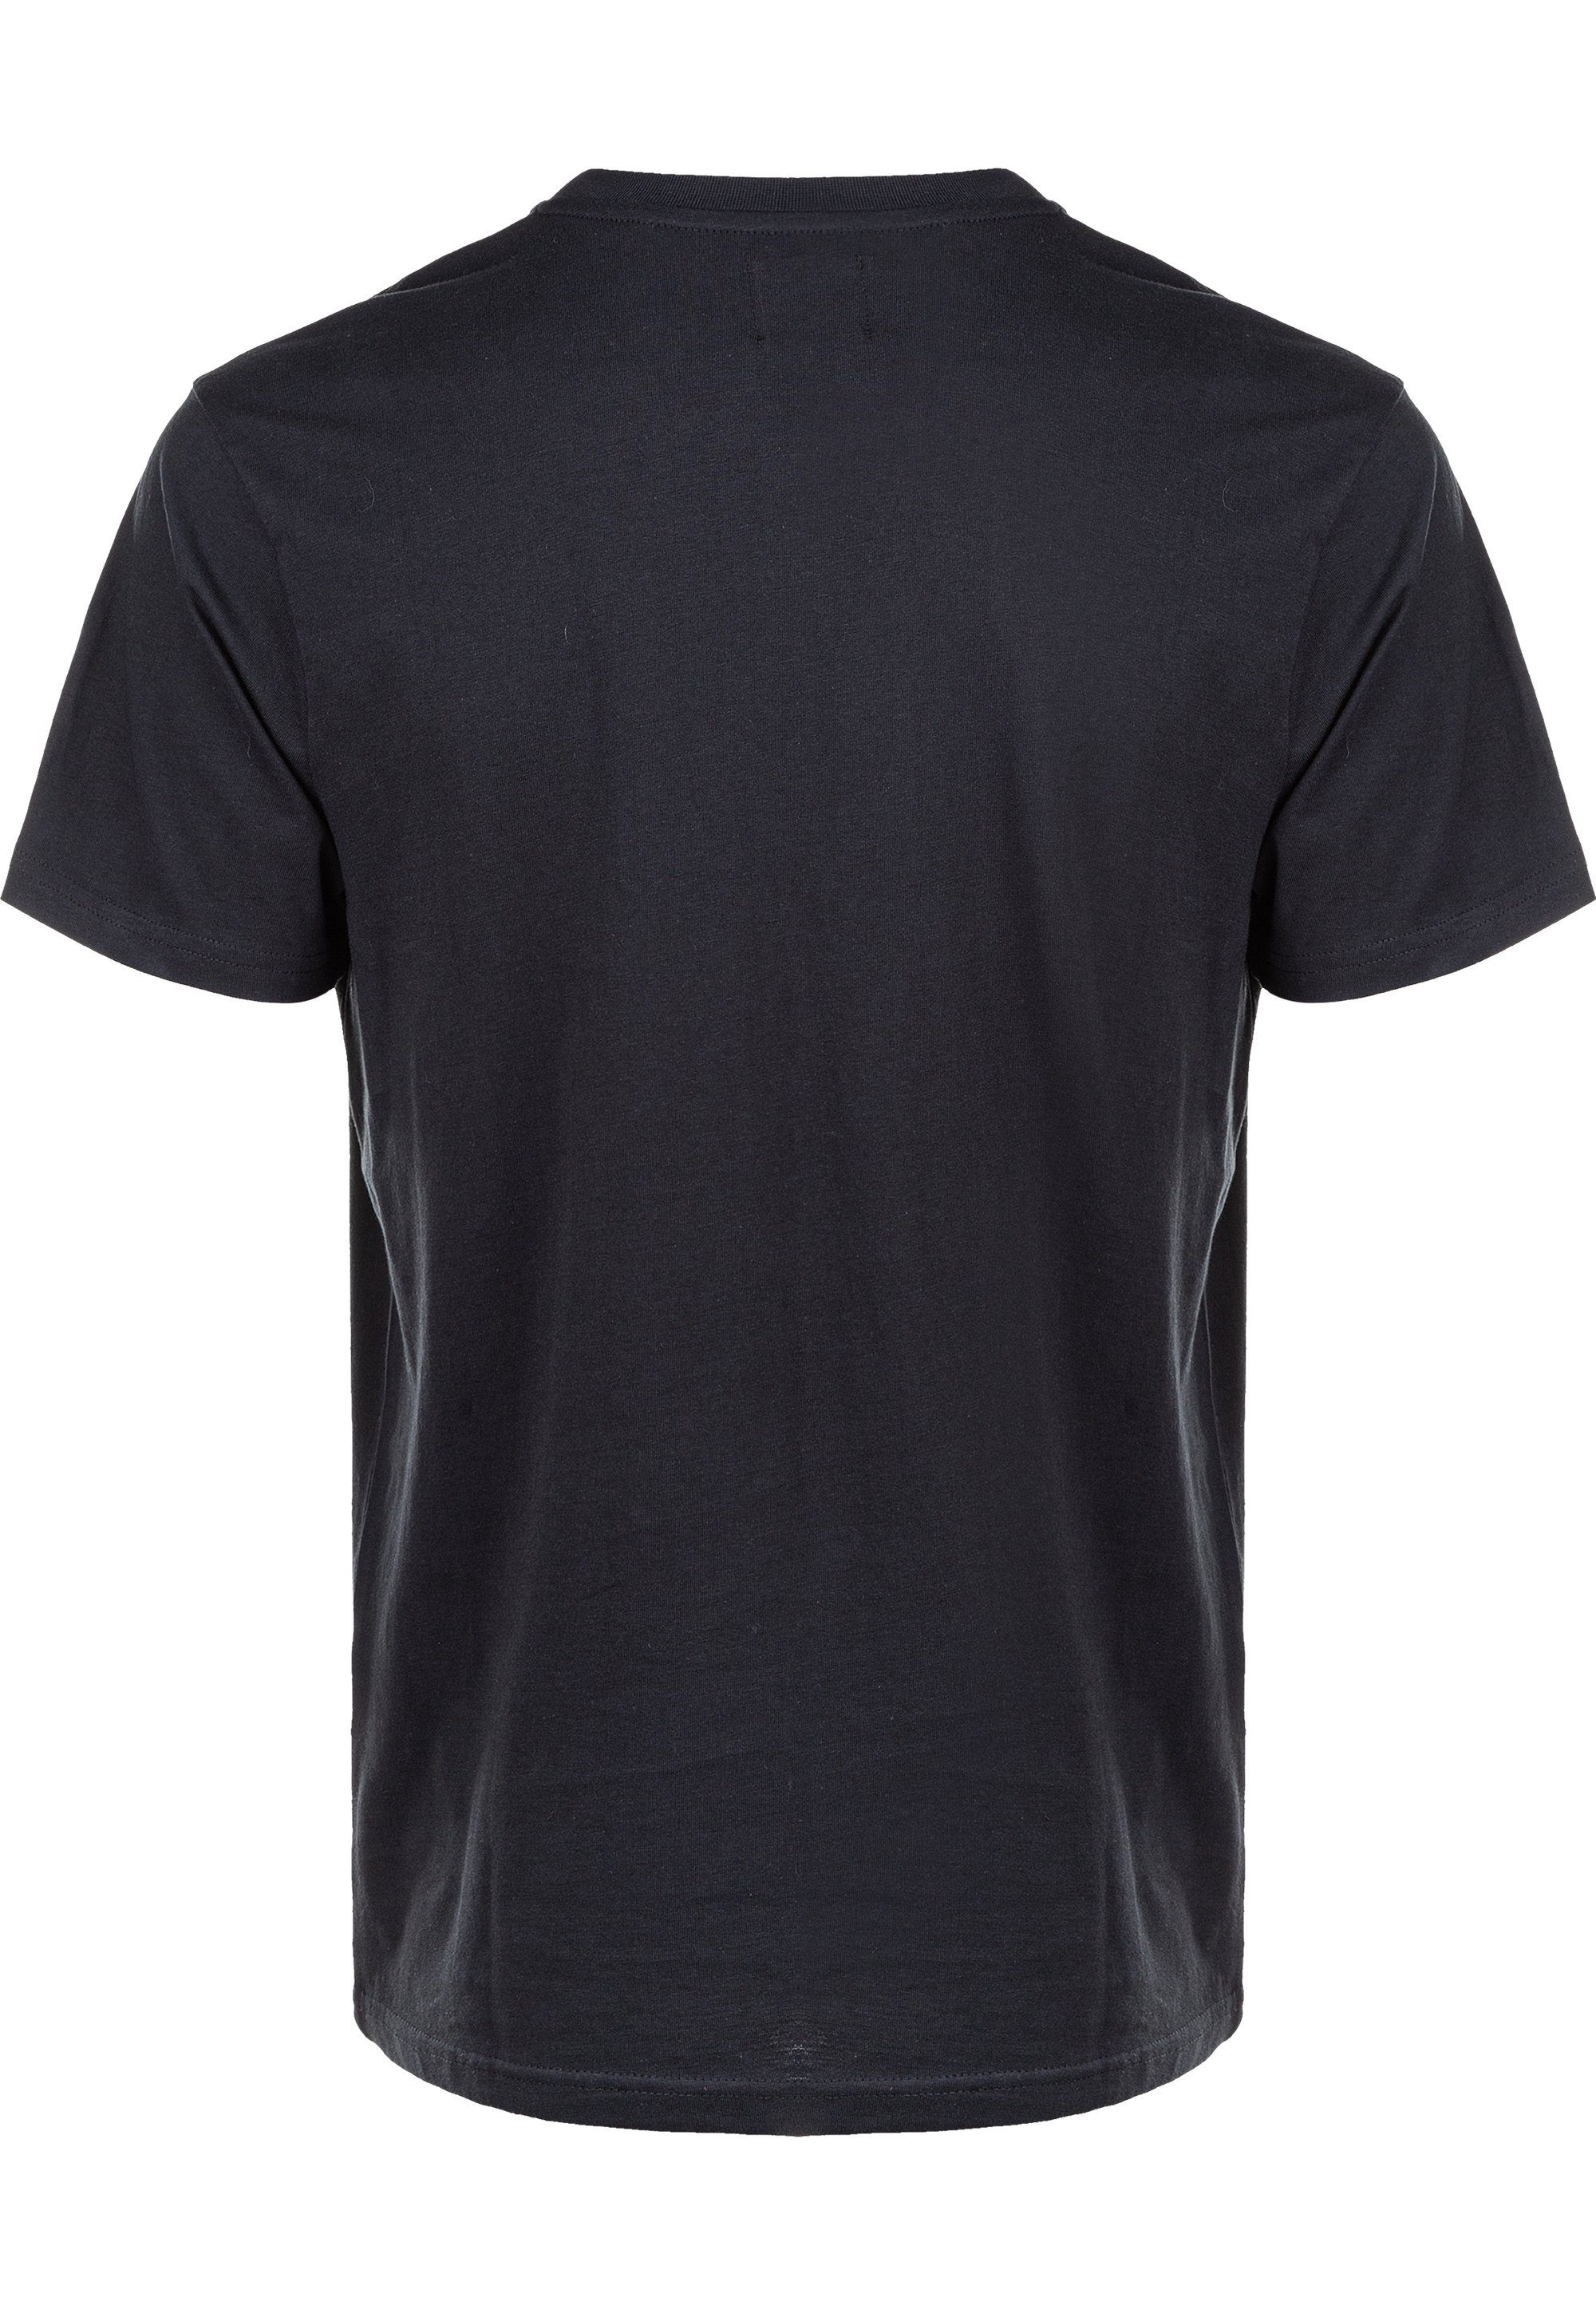 aus schwarz CRUZ Baumwolle T-Shirt Highmore reiner